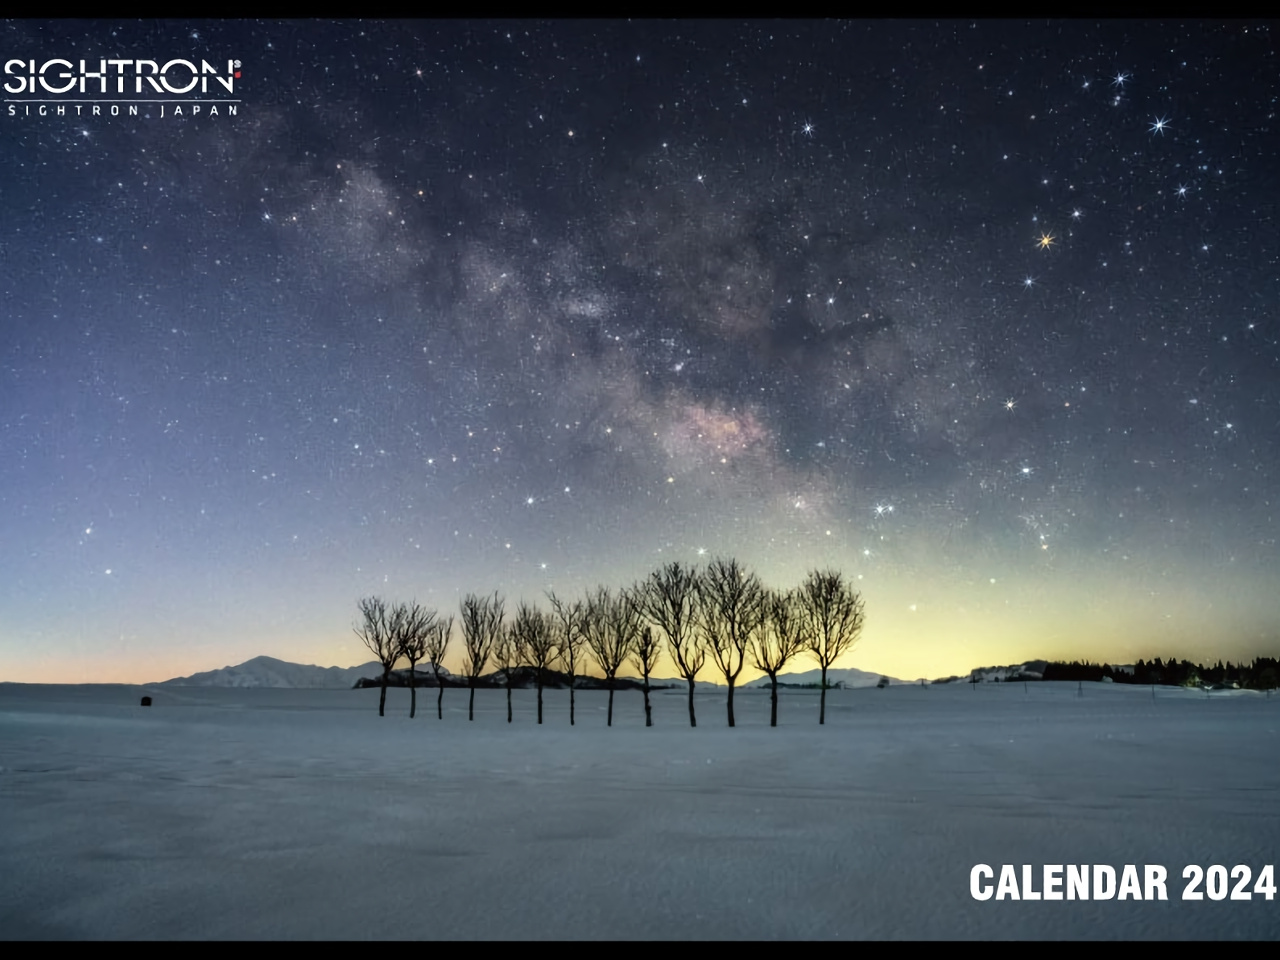 双眼鏡のサイトロン、2024年カレンダー発売--天体写真撮影に役立つ情報を掲載